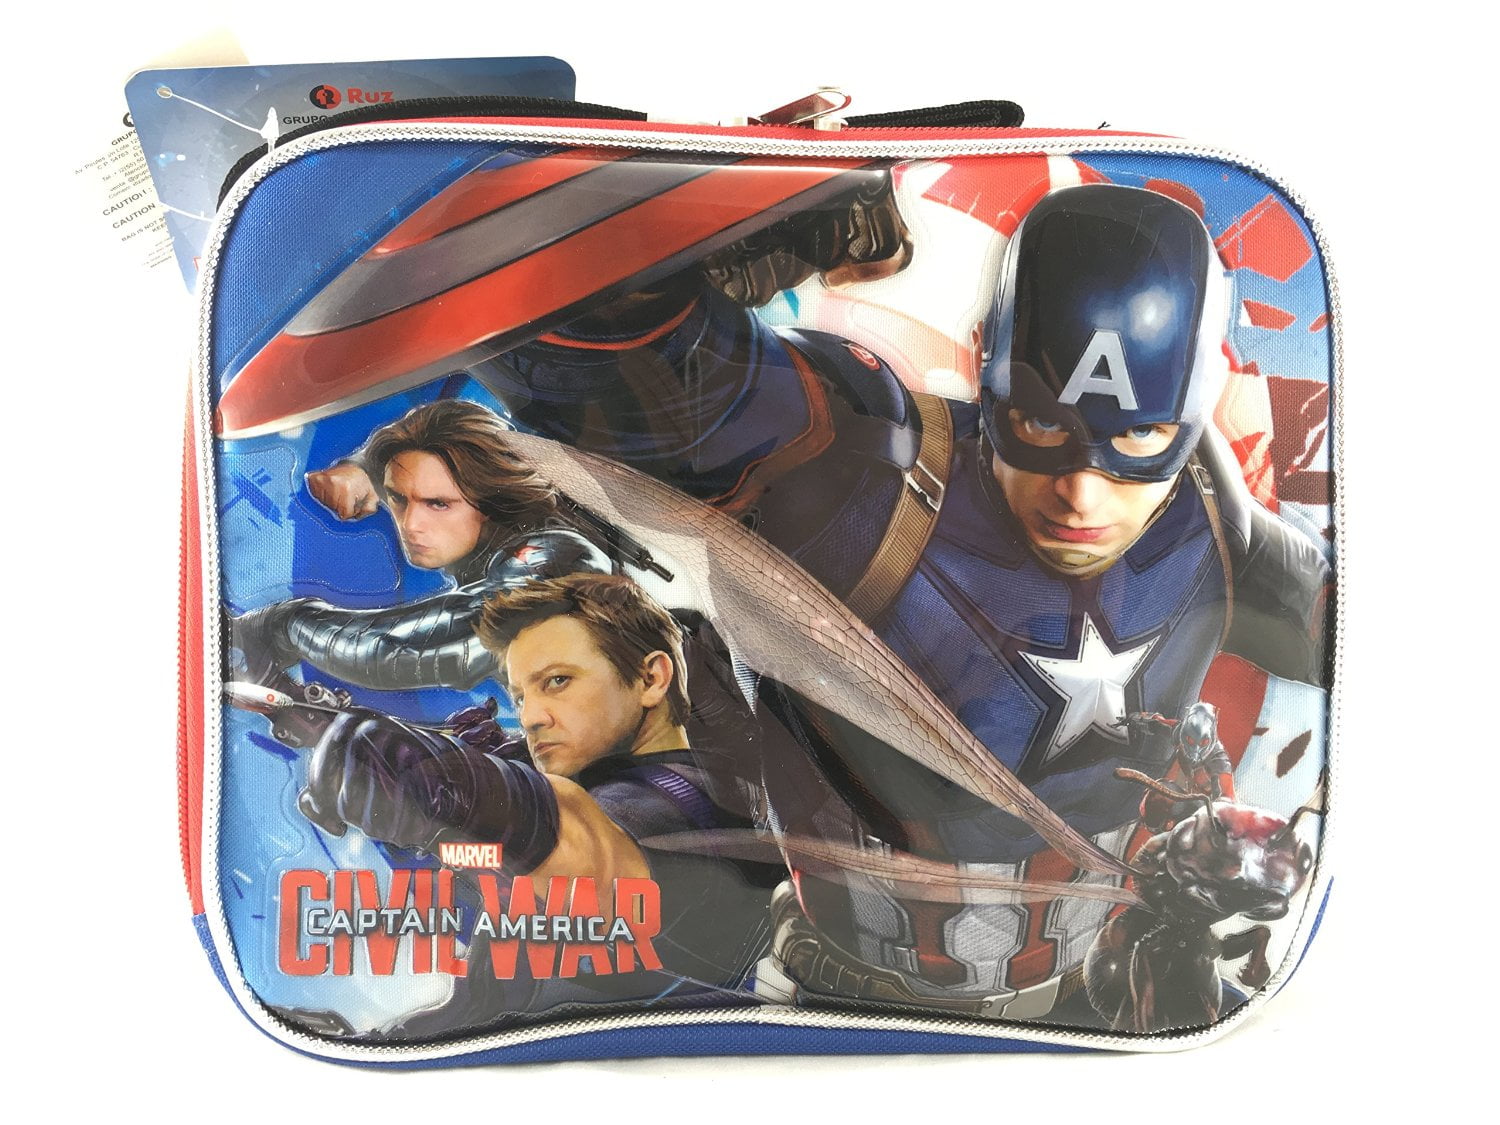 Marvel Avengers Captain America-3 Civil War Boys Lunch Bag